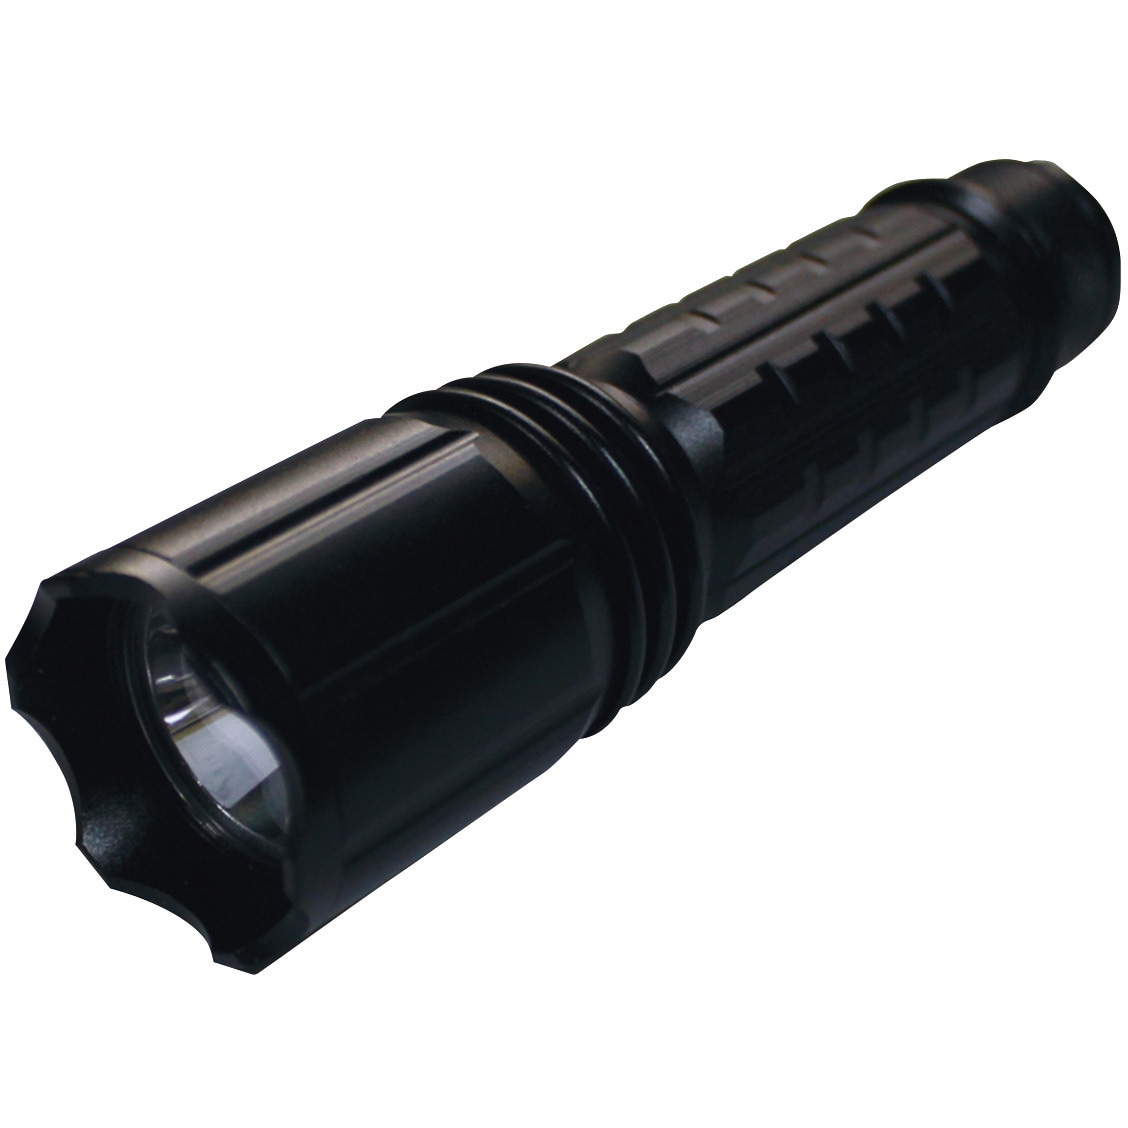 UV-SU375-01 Hydrangea ブラックライト 高出力(ノーマル照射) 乾電池タイプ 1個 Hydrangea  【通販サイトMonotaRO】